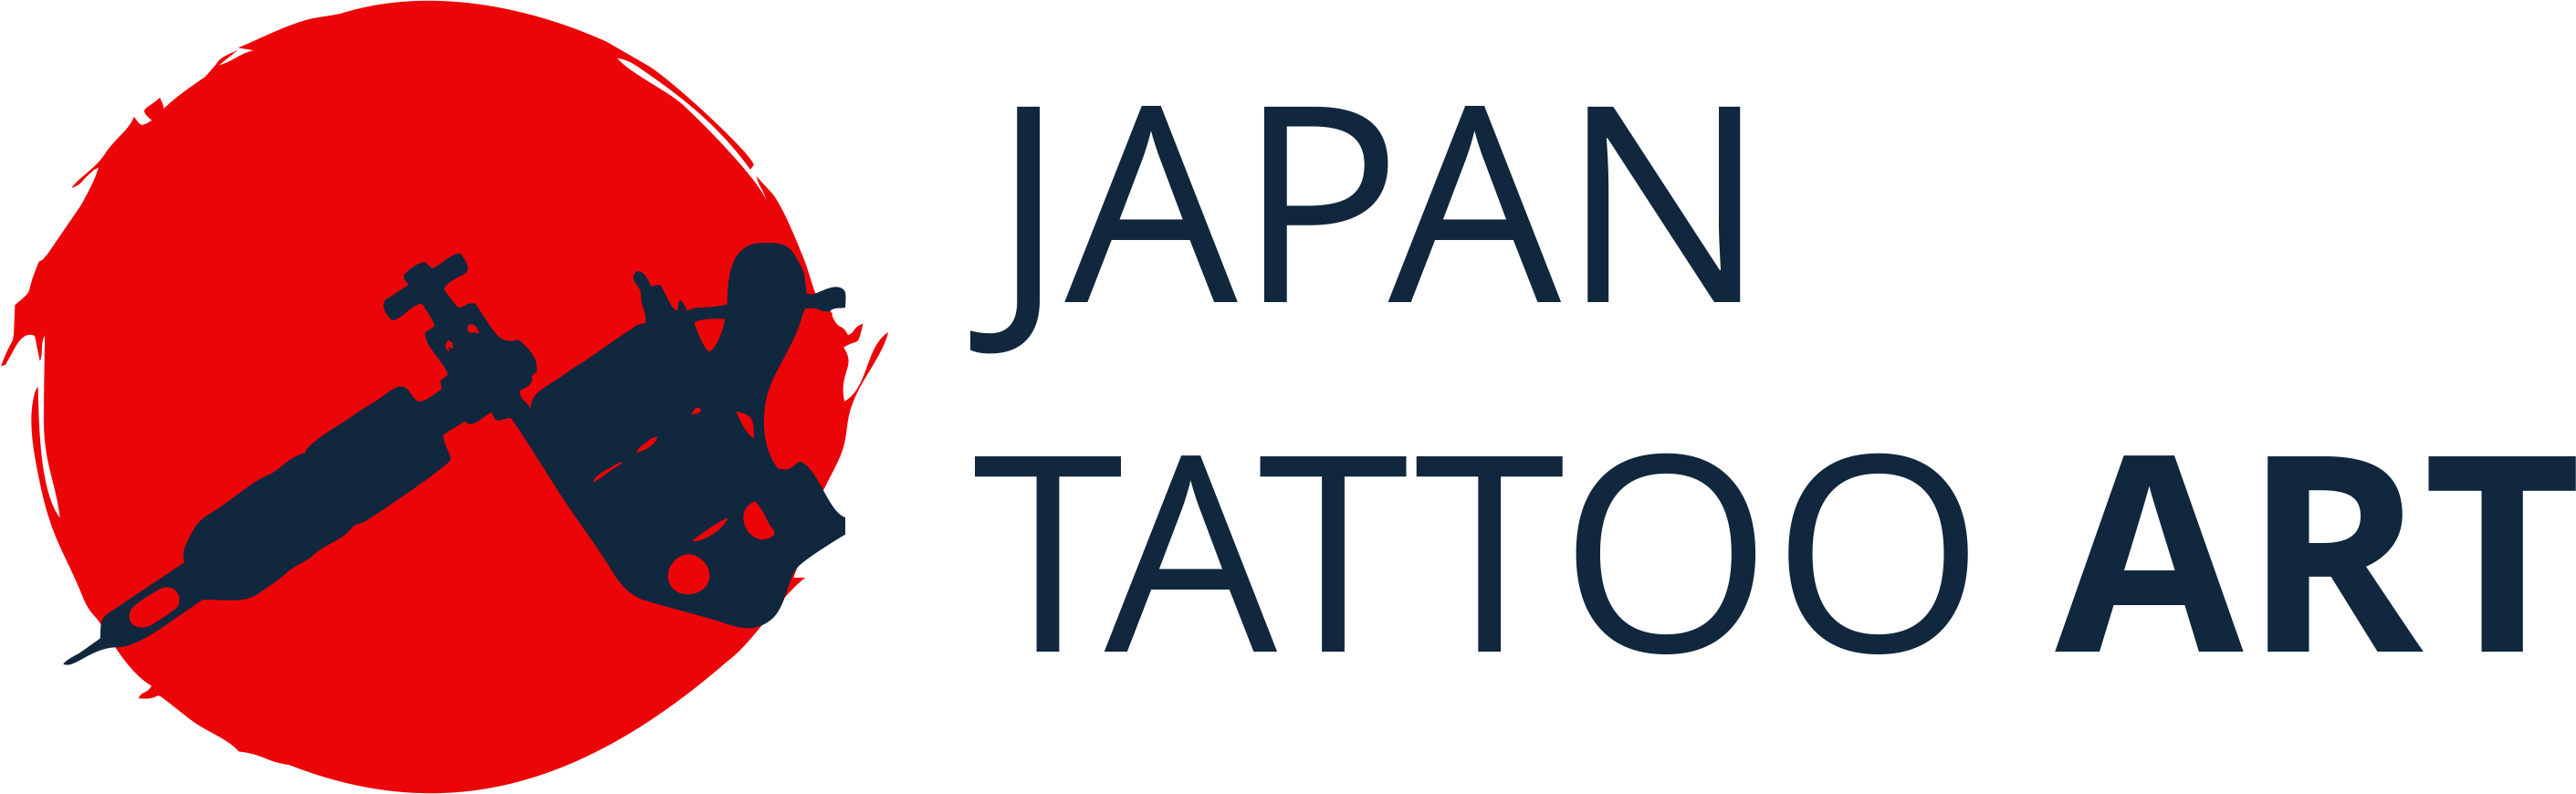 Japan Tattoo Club